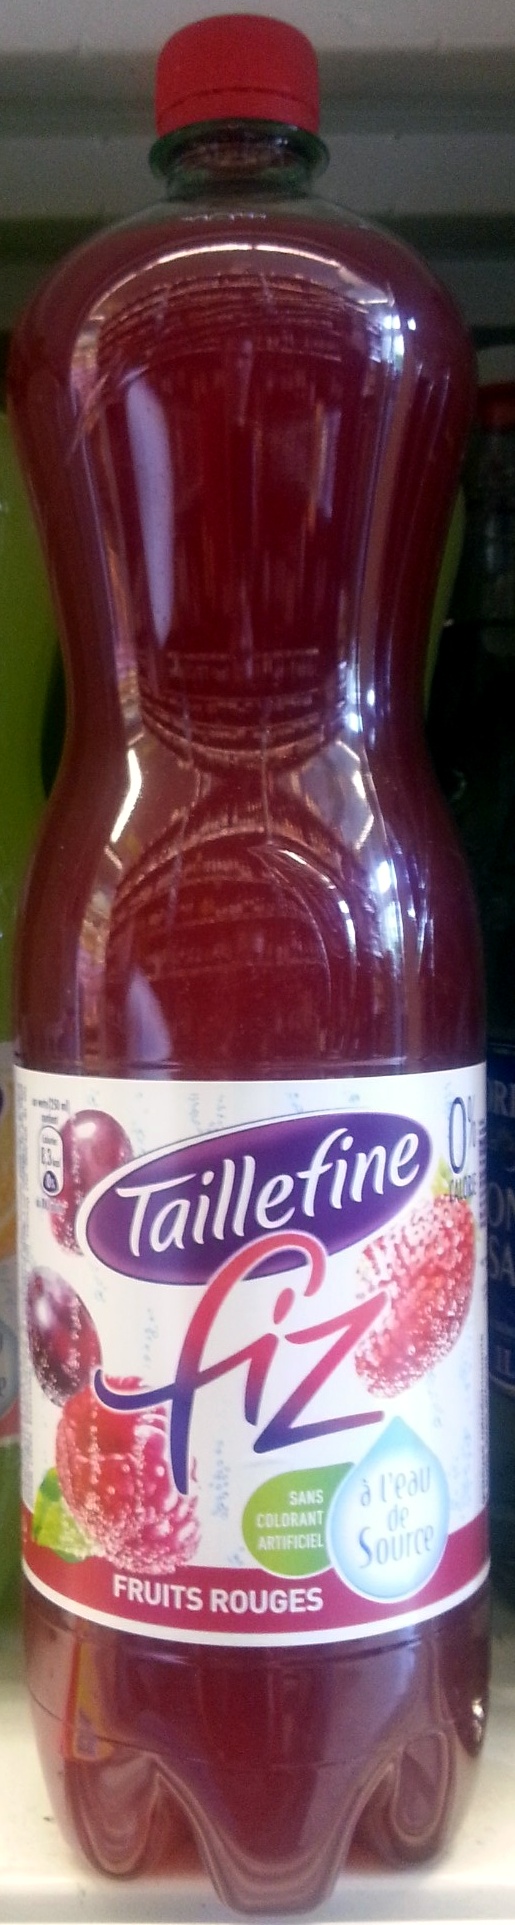 Taillefine Fiz Fruits Rouges - Produit